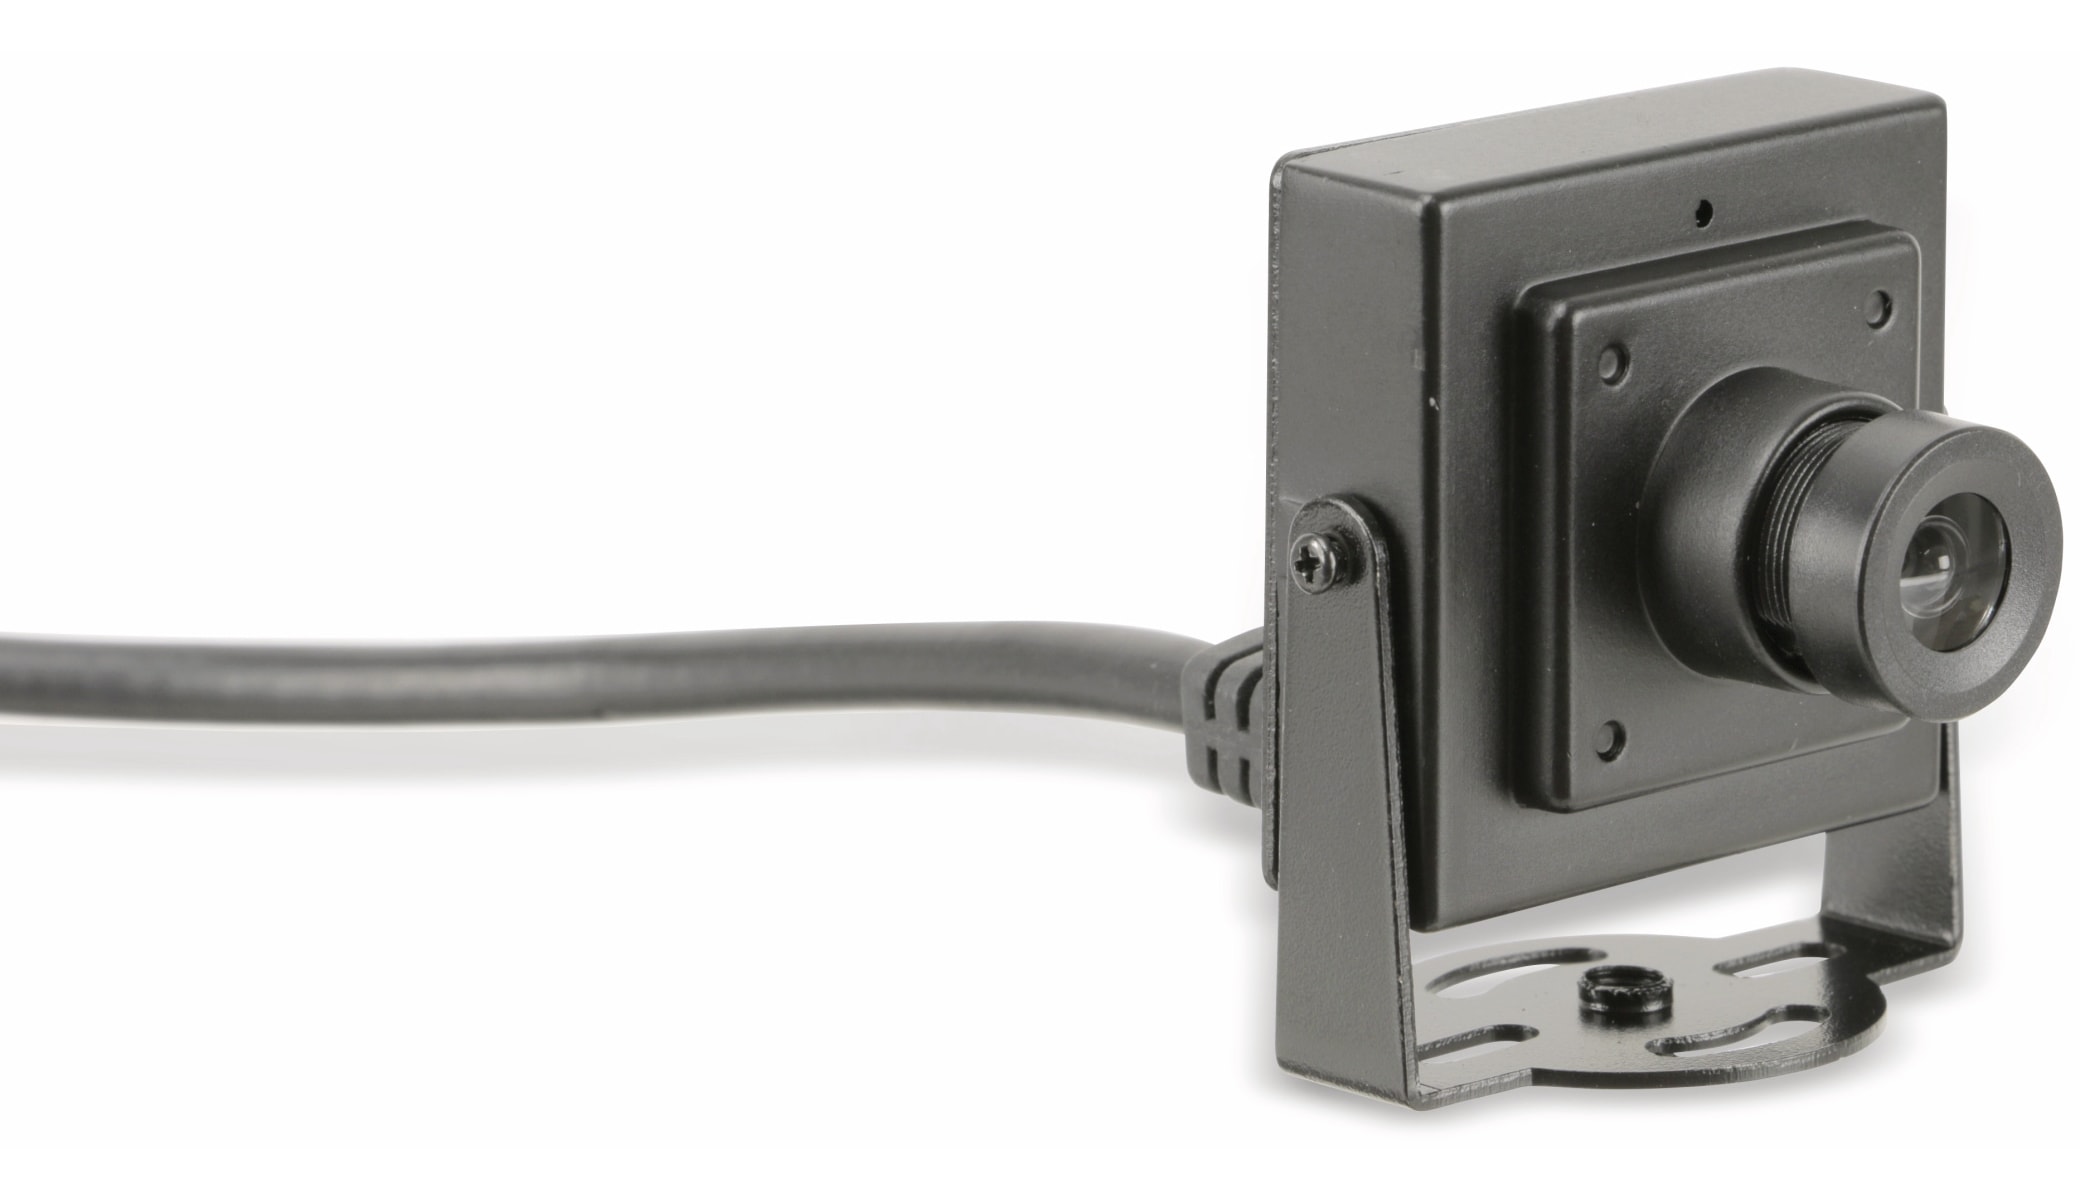 Cubieboard USB-Kameramodul XiFT-N20M12 für CubieBoard